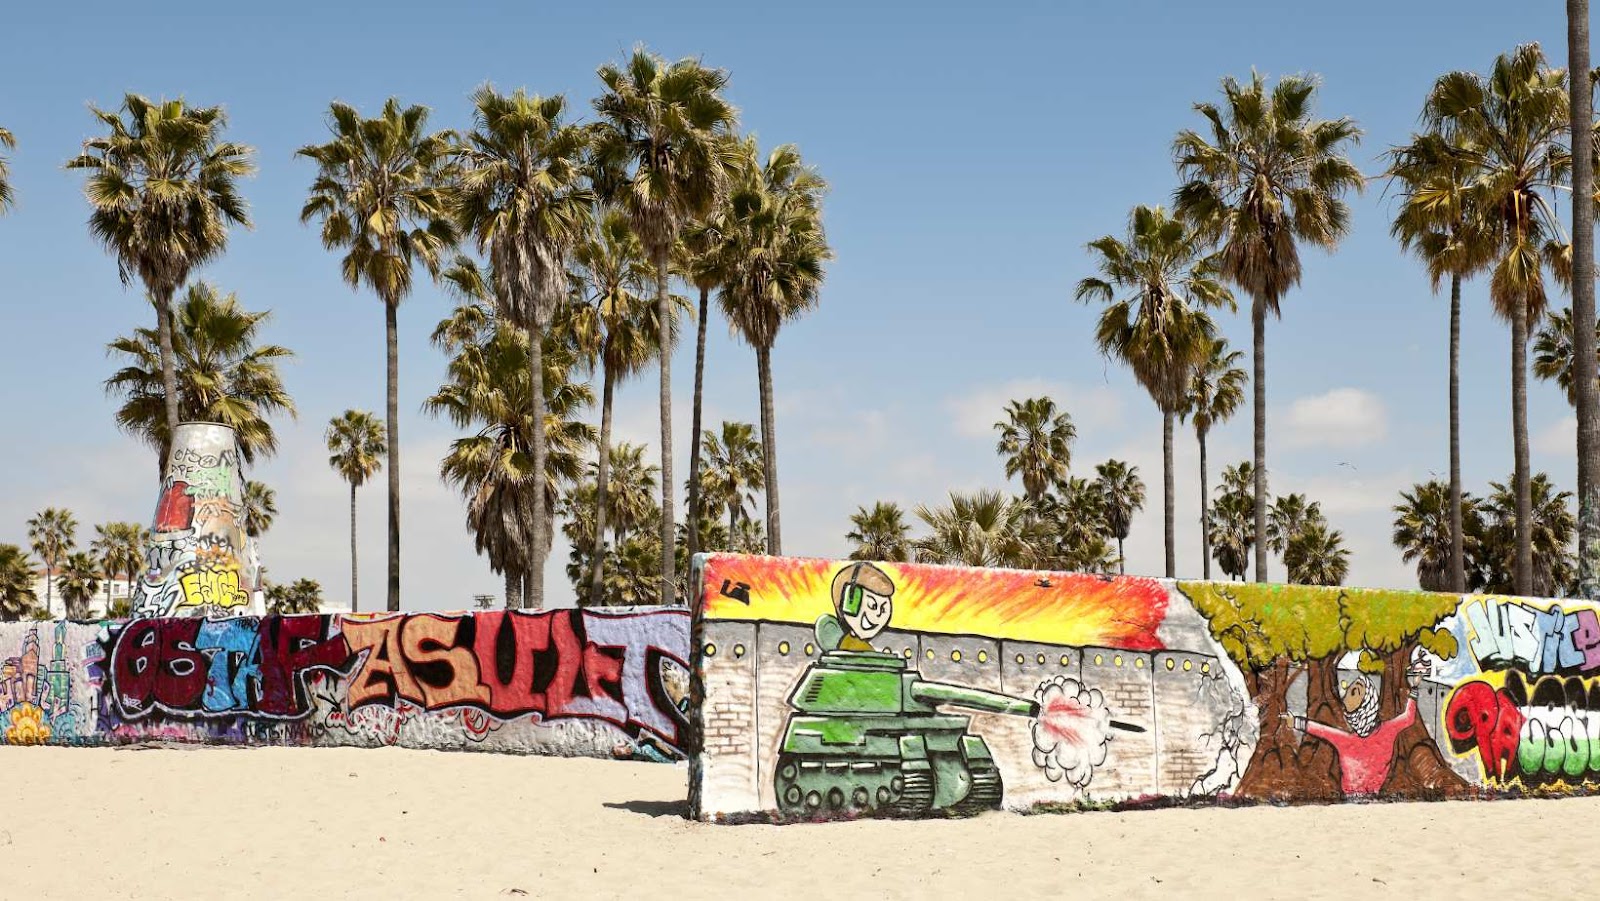 Graffiti Arts and Murals in Venice Beach